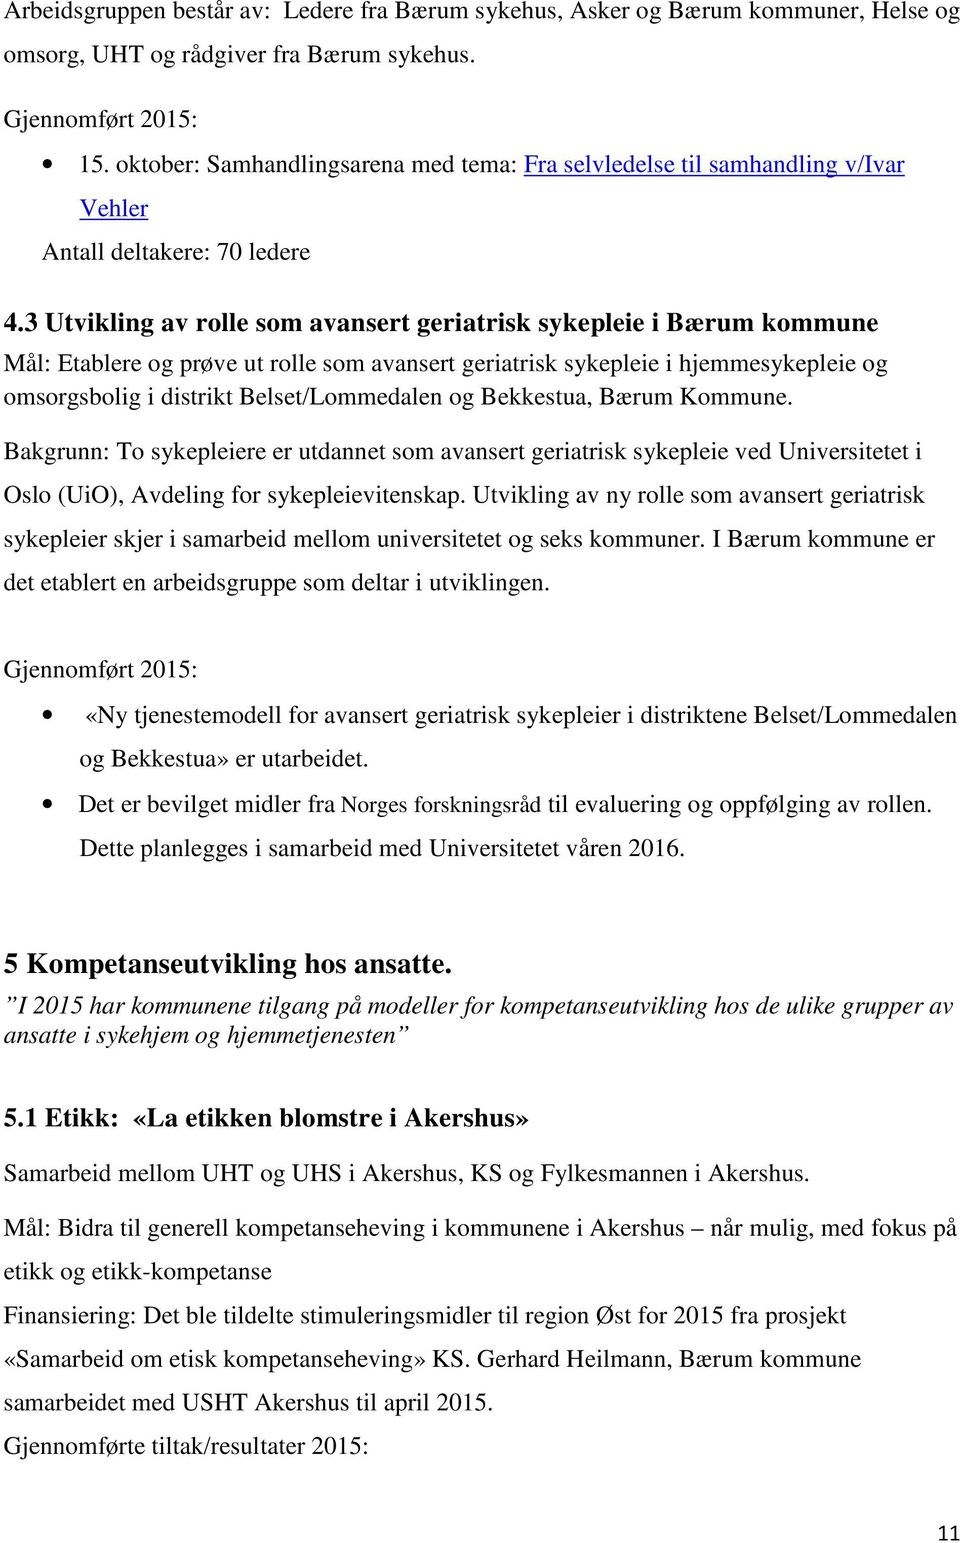 3 Utvikling av rolle som avansert geriatrisk sykepleie i Bærum kommune Mål: Etablere og prøve ut rolle som avansert geriatrisk sykepleie i hjemmesykepleie og omsorgsbolig i distrikt Belset/Lommedalen